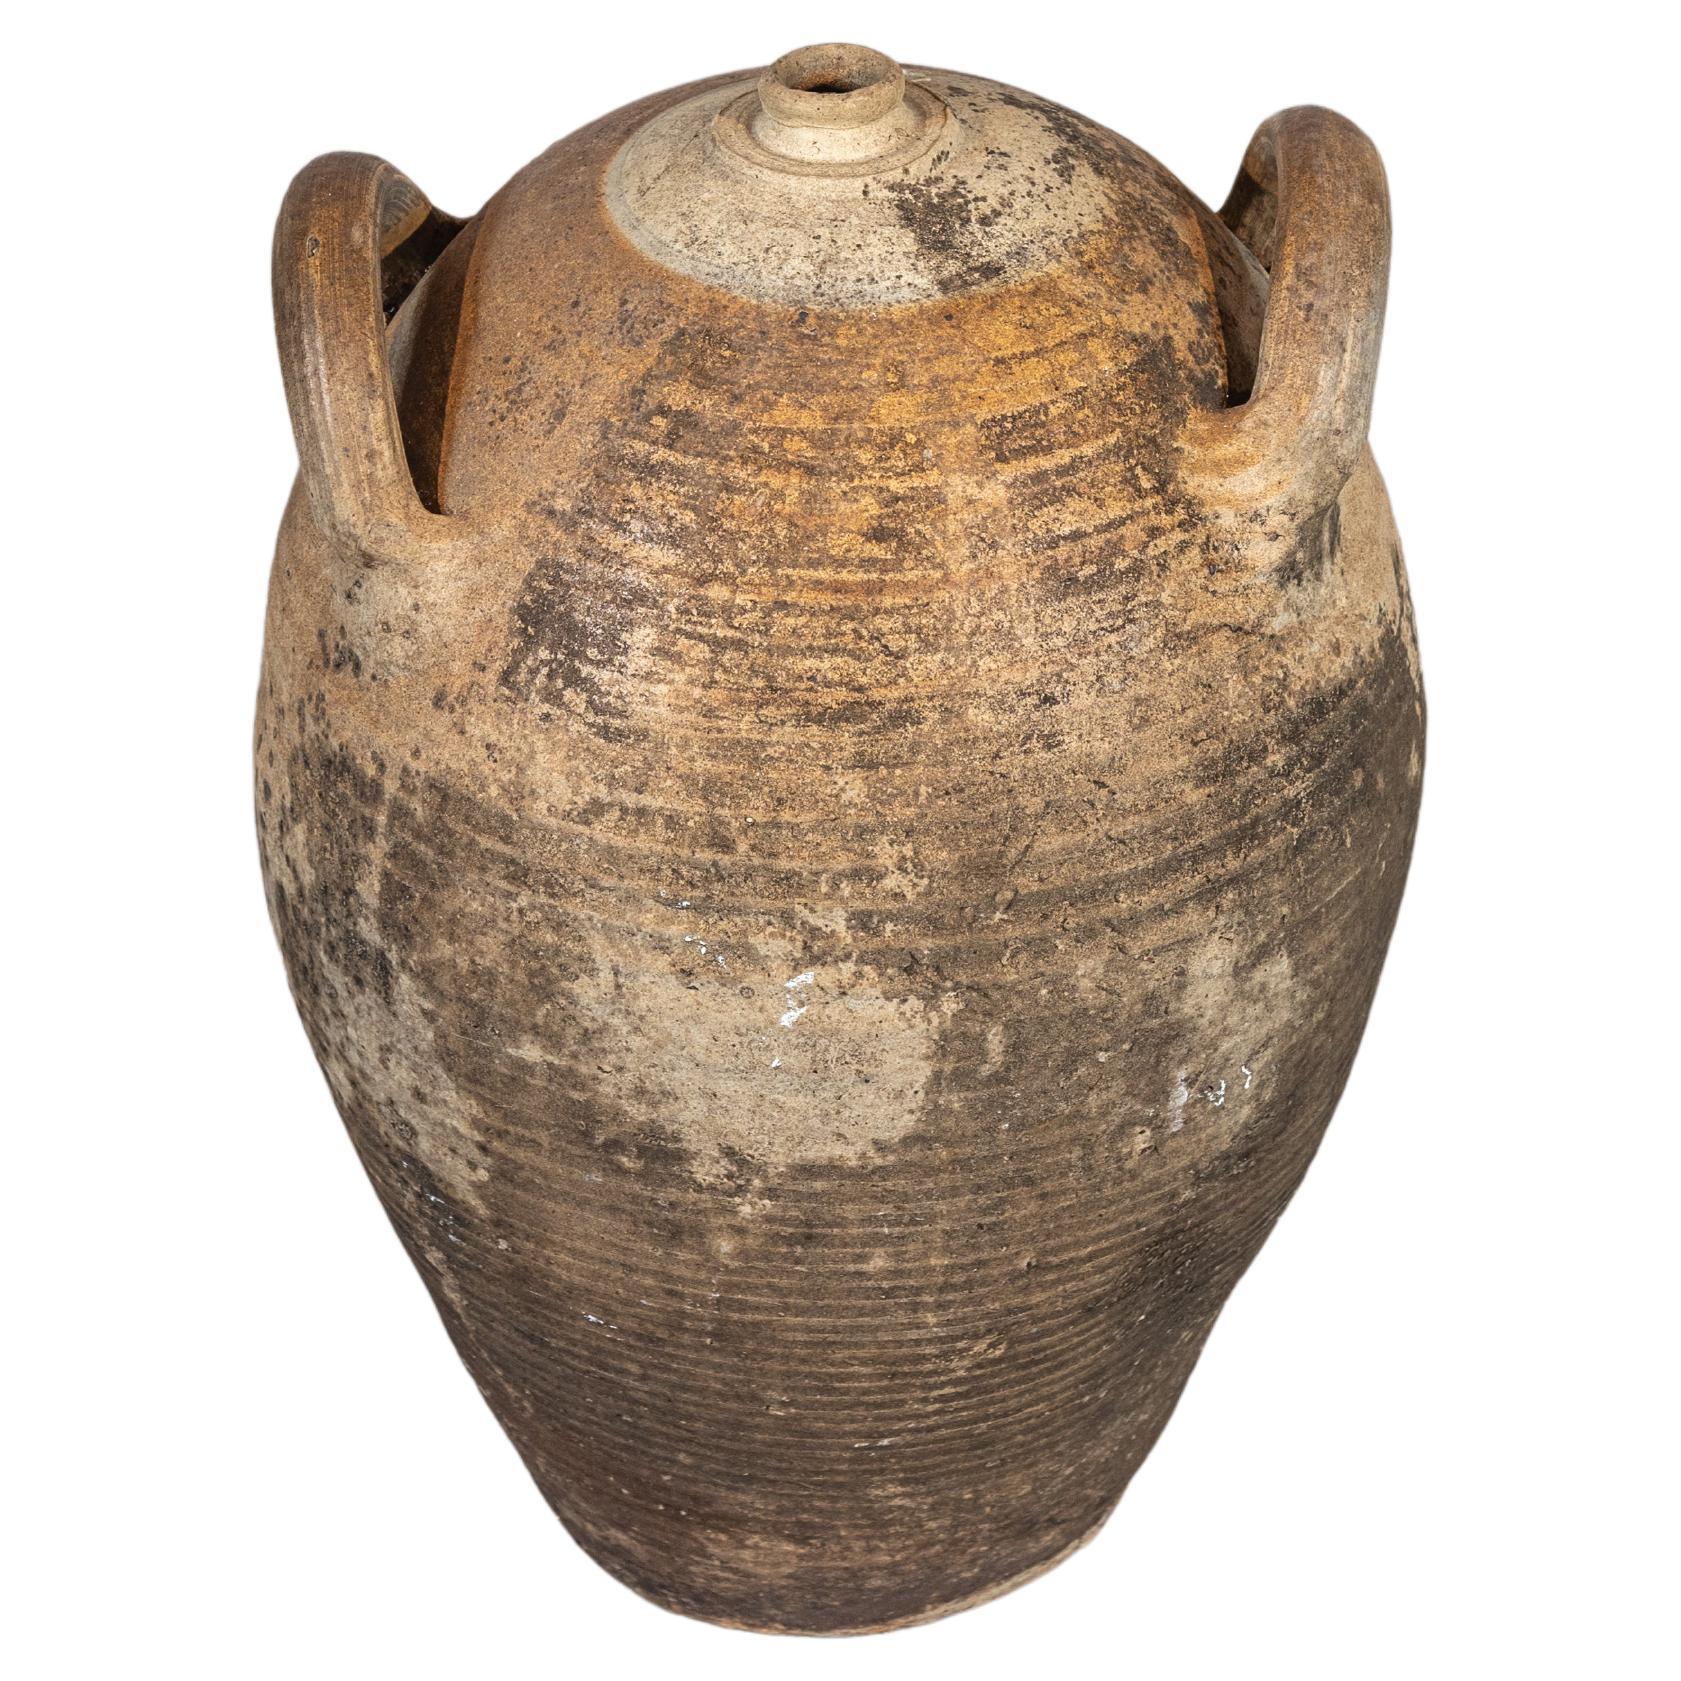 Antique Terracotta Pot or Jug